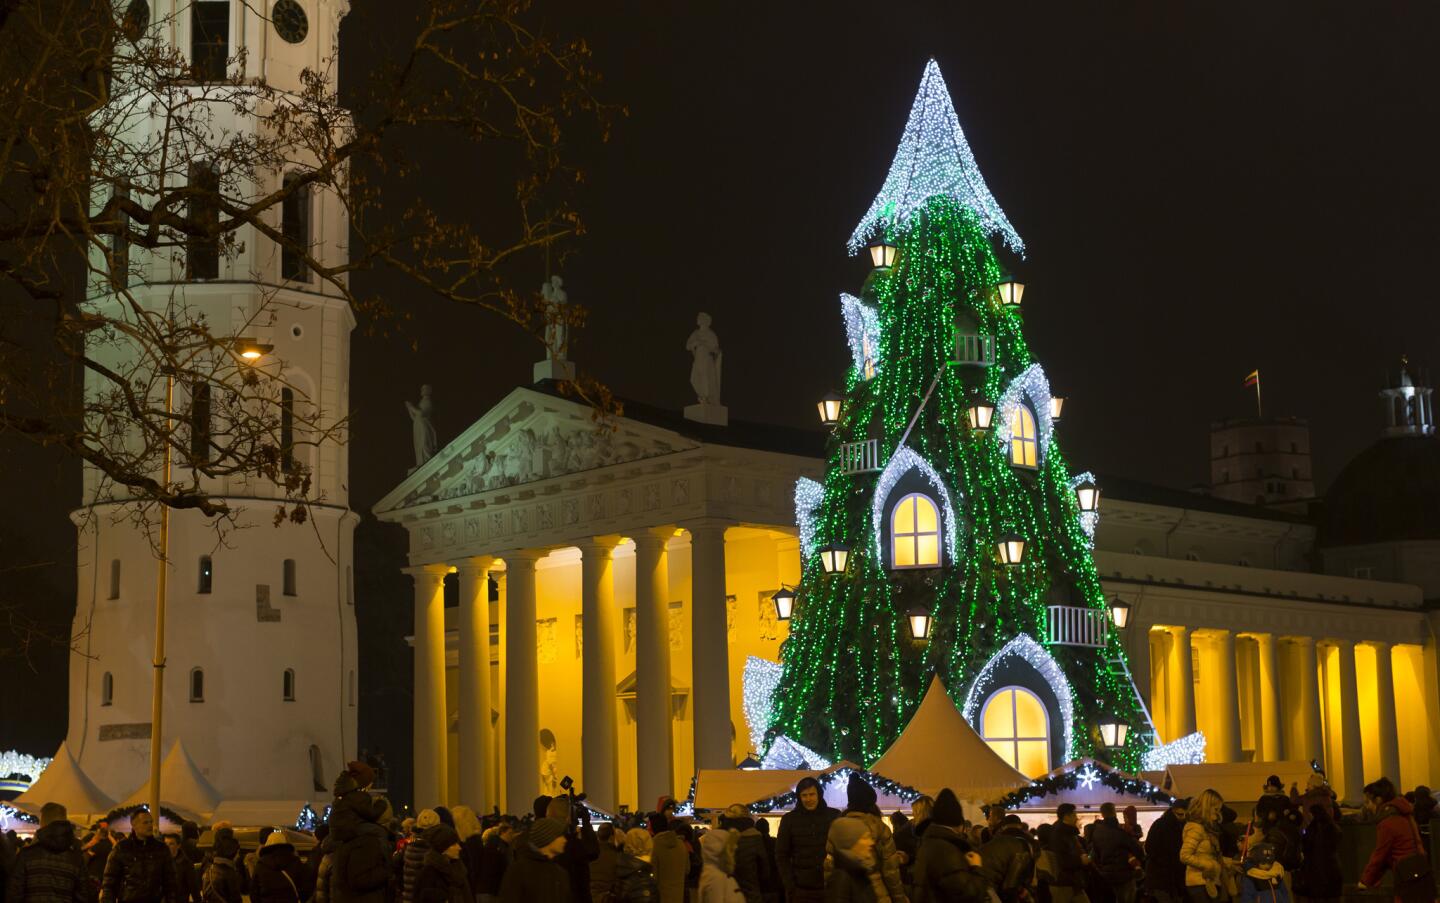 Lithuania's national Christmas tree